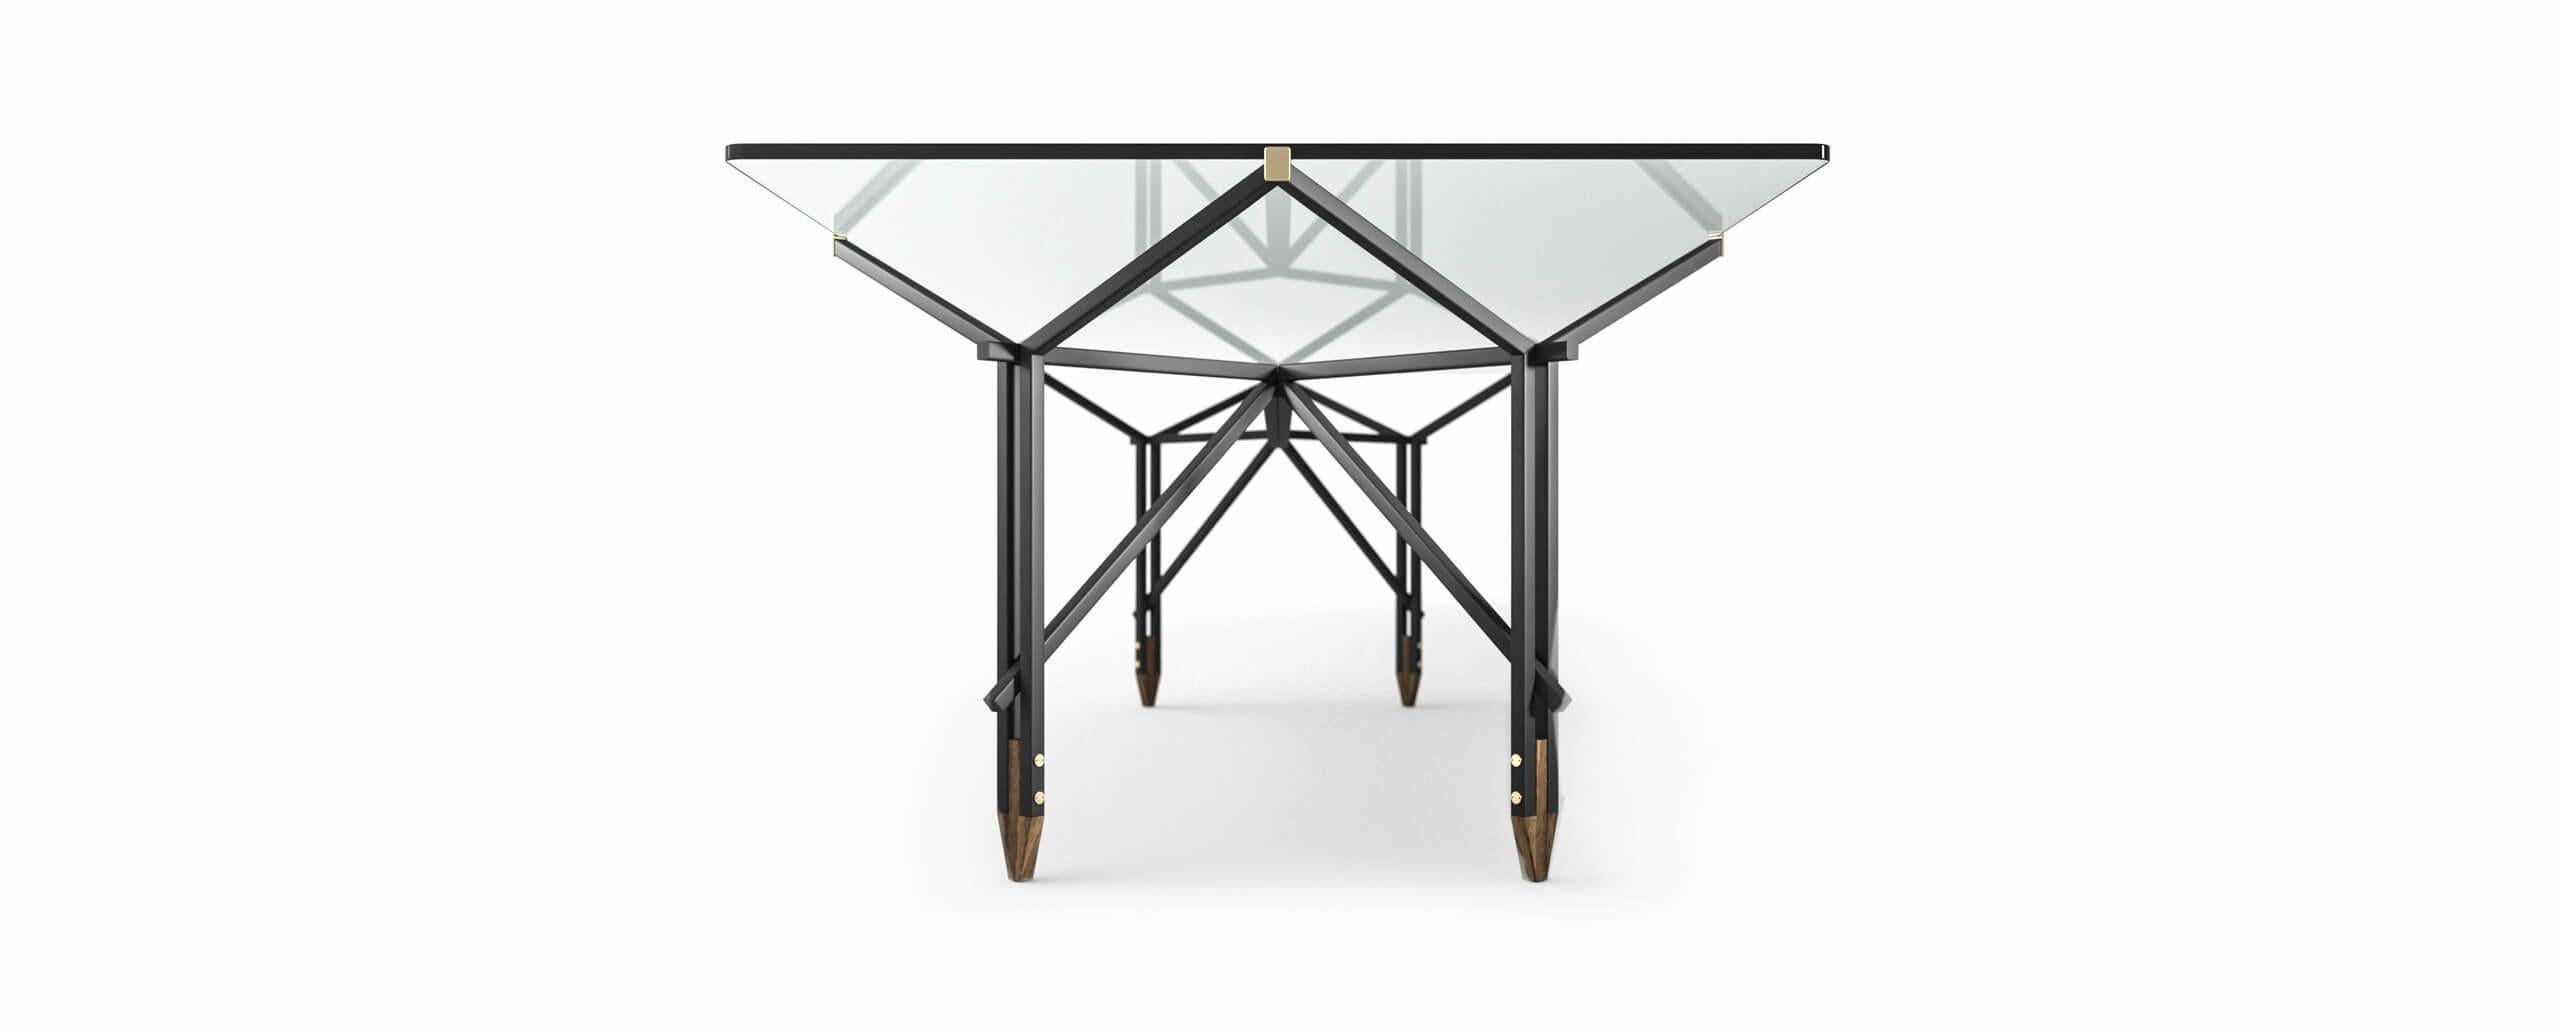 Table conçue par Ico Parisi en 1955, relancée en 2020.
Fabriqué par Cassina en Italie.

Conçue en 1955, la conception de cette table - un meuble considéré par Ico Parisi comme un élément central de la maison - accompagne la carrière du maestro et